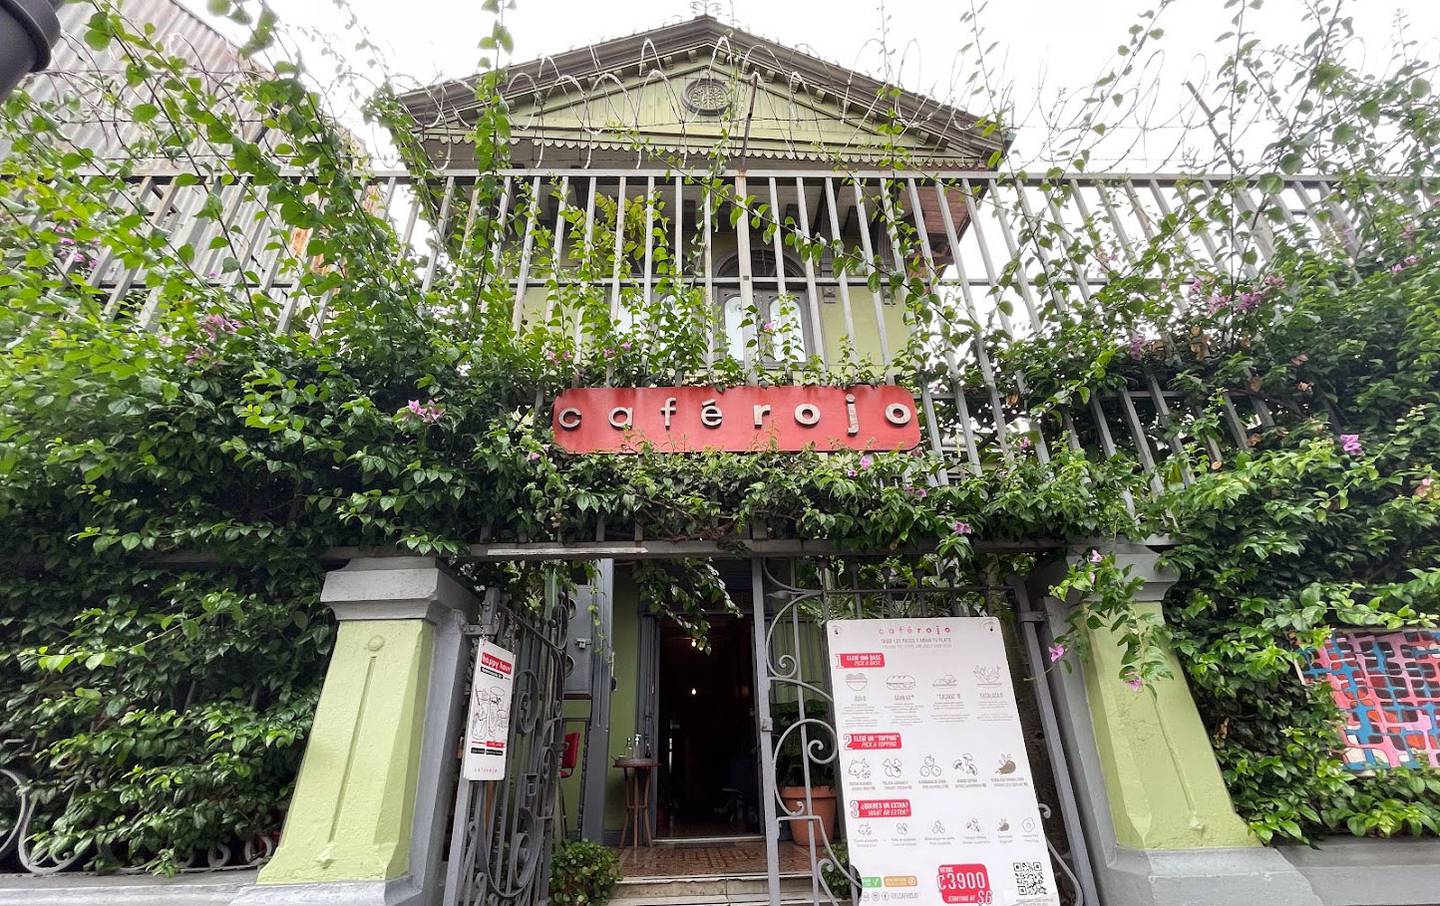 Conozca la historia viva de Casa Pagés, hogar de Café Rojo, donde las paredes susurran cuentos centenarios en el corazón de San José.